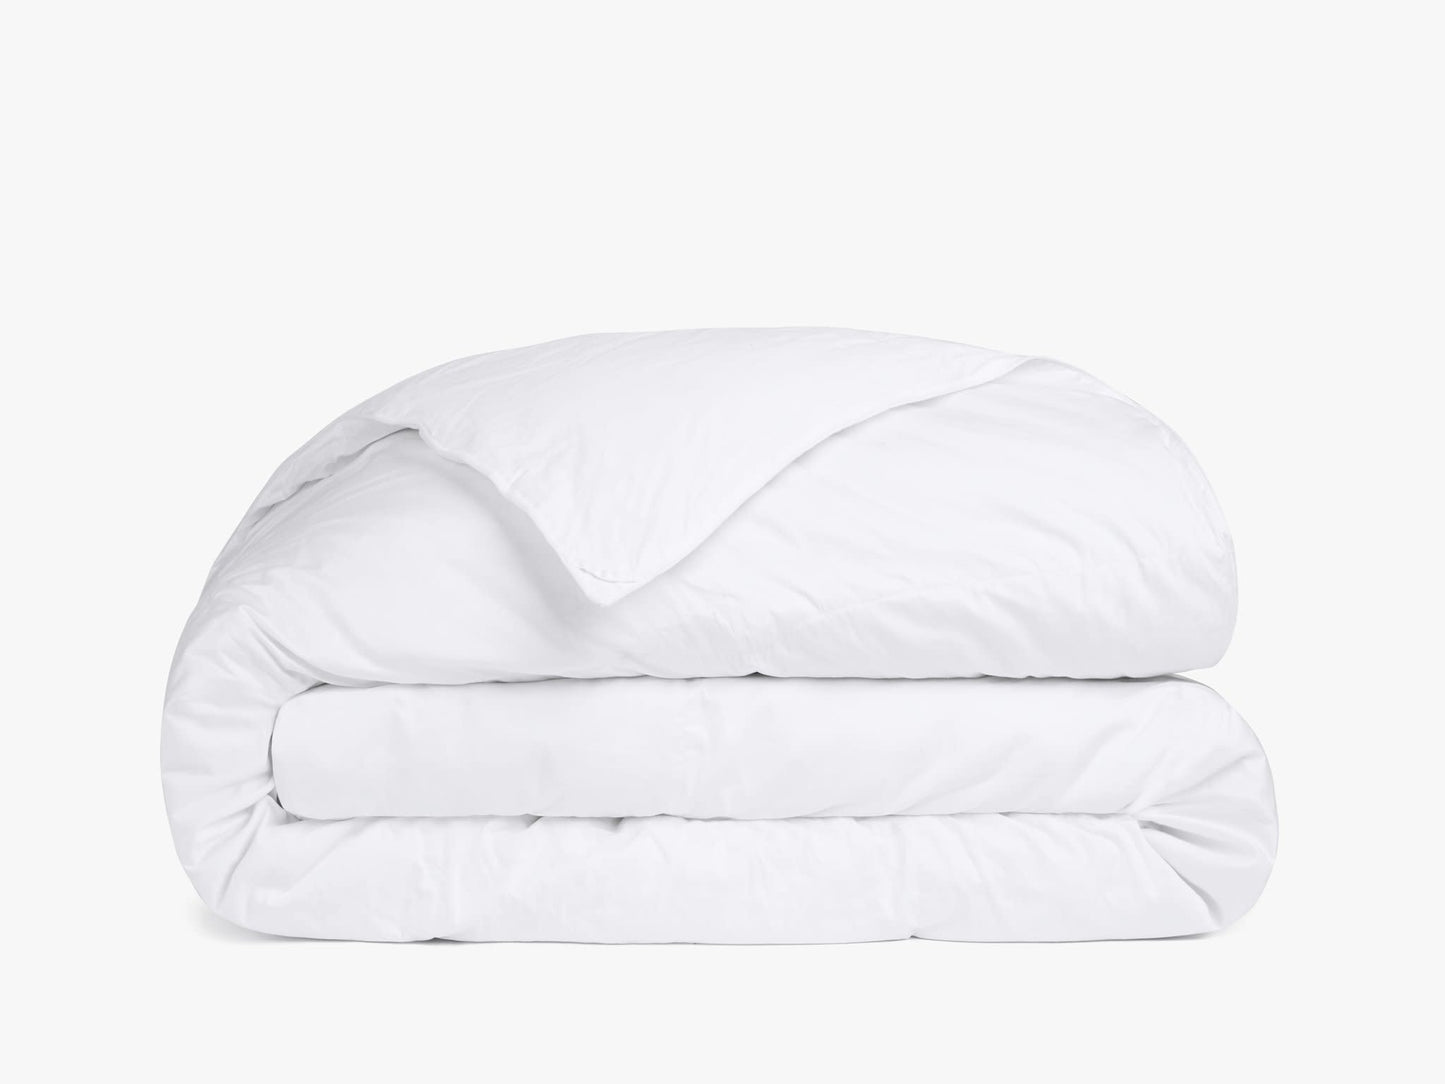 Duvet Insert / Comforter - Full XL 84"x90"